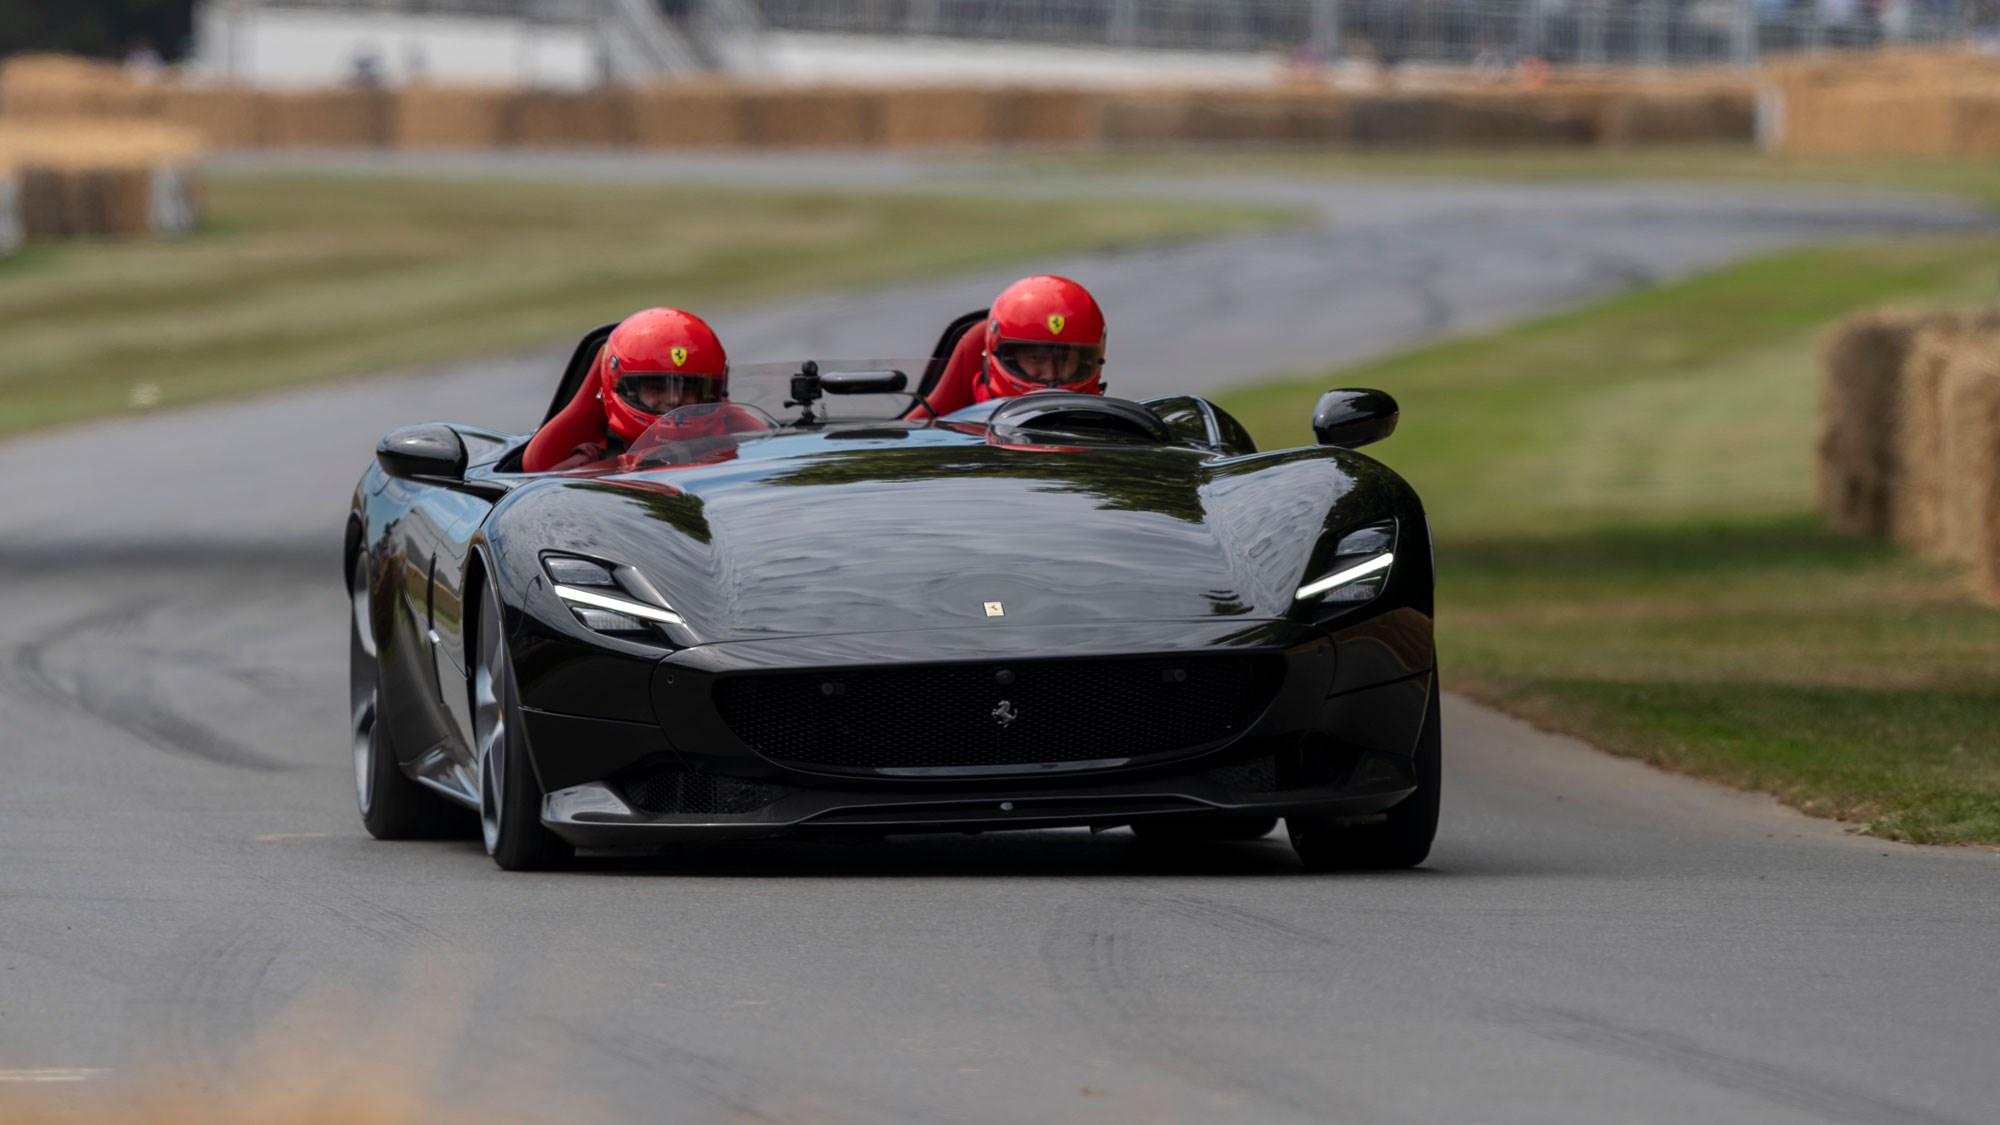 Ferrari revs up for Project CARS 2